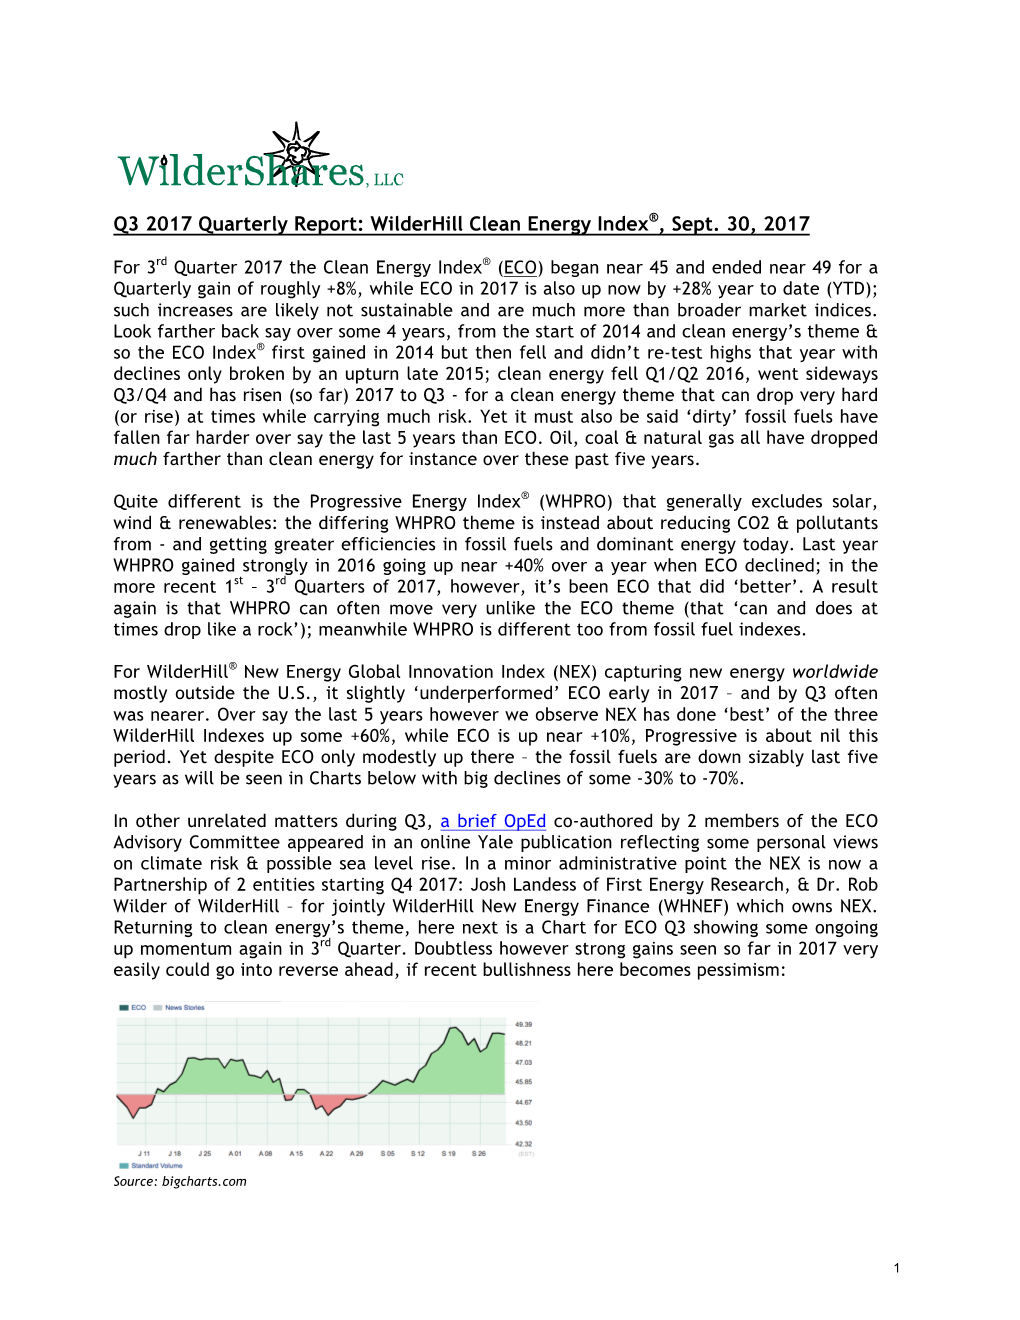 Q3 2017 Quarterly Report: Wilderhill Clean Energy Index®, Sept. 30, 2017